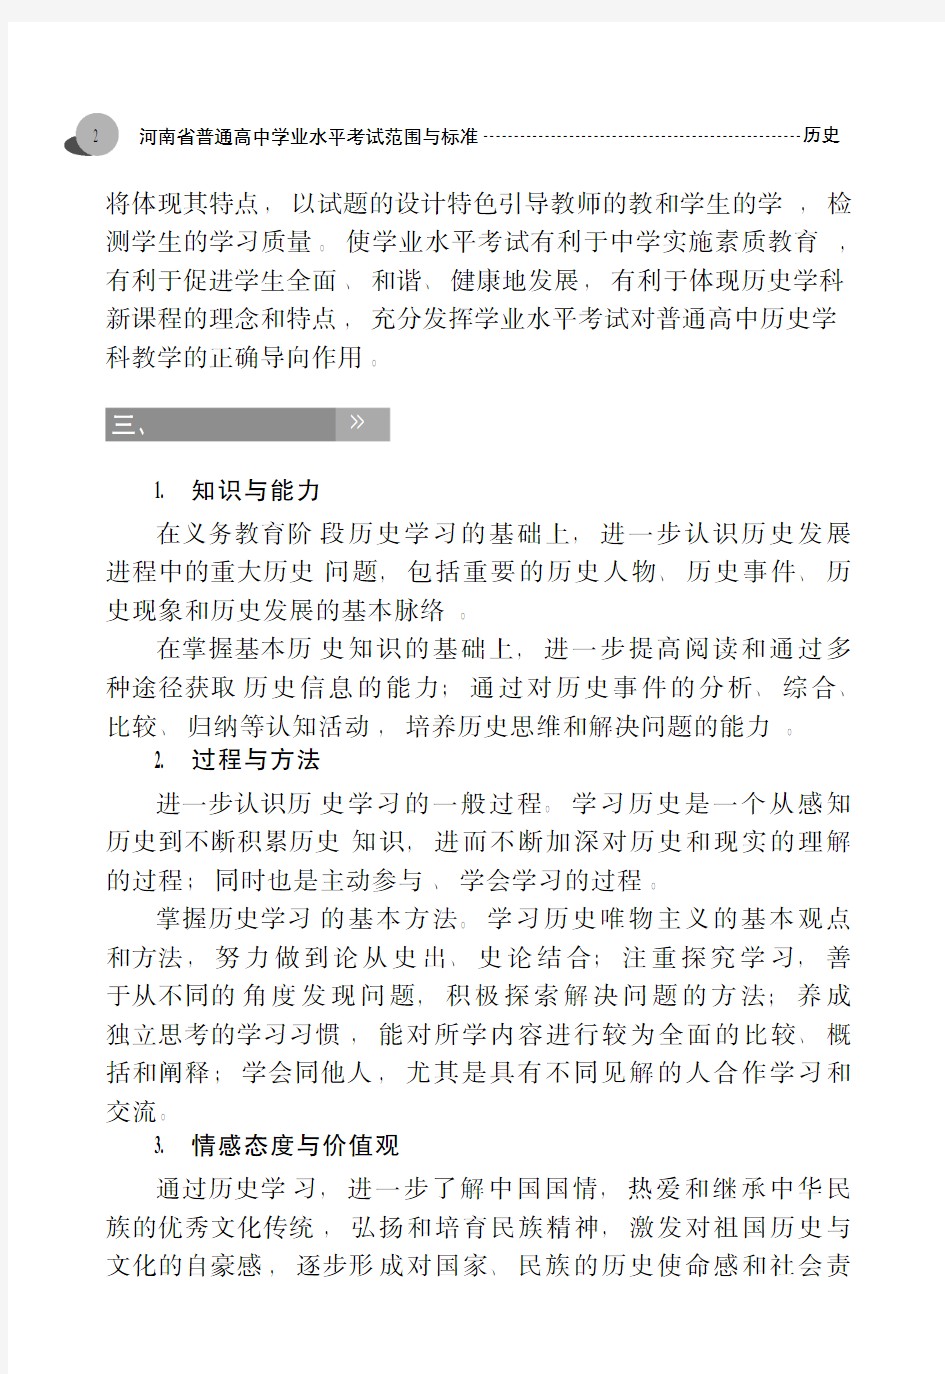 河南省普通高中学业水平考试范围与标准.历史-考试说明